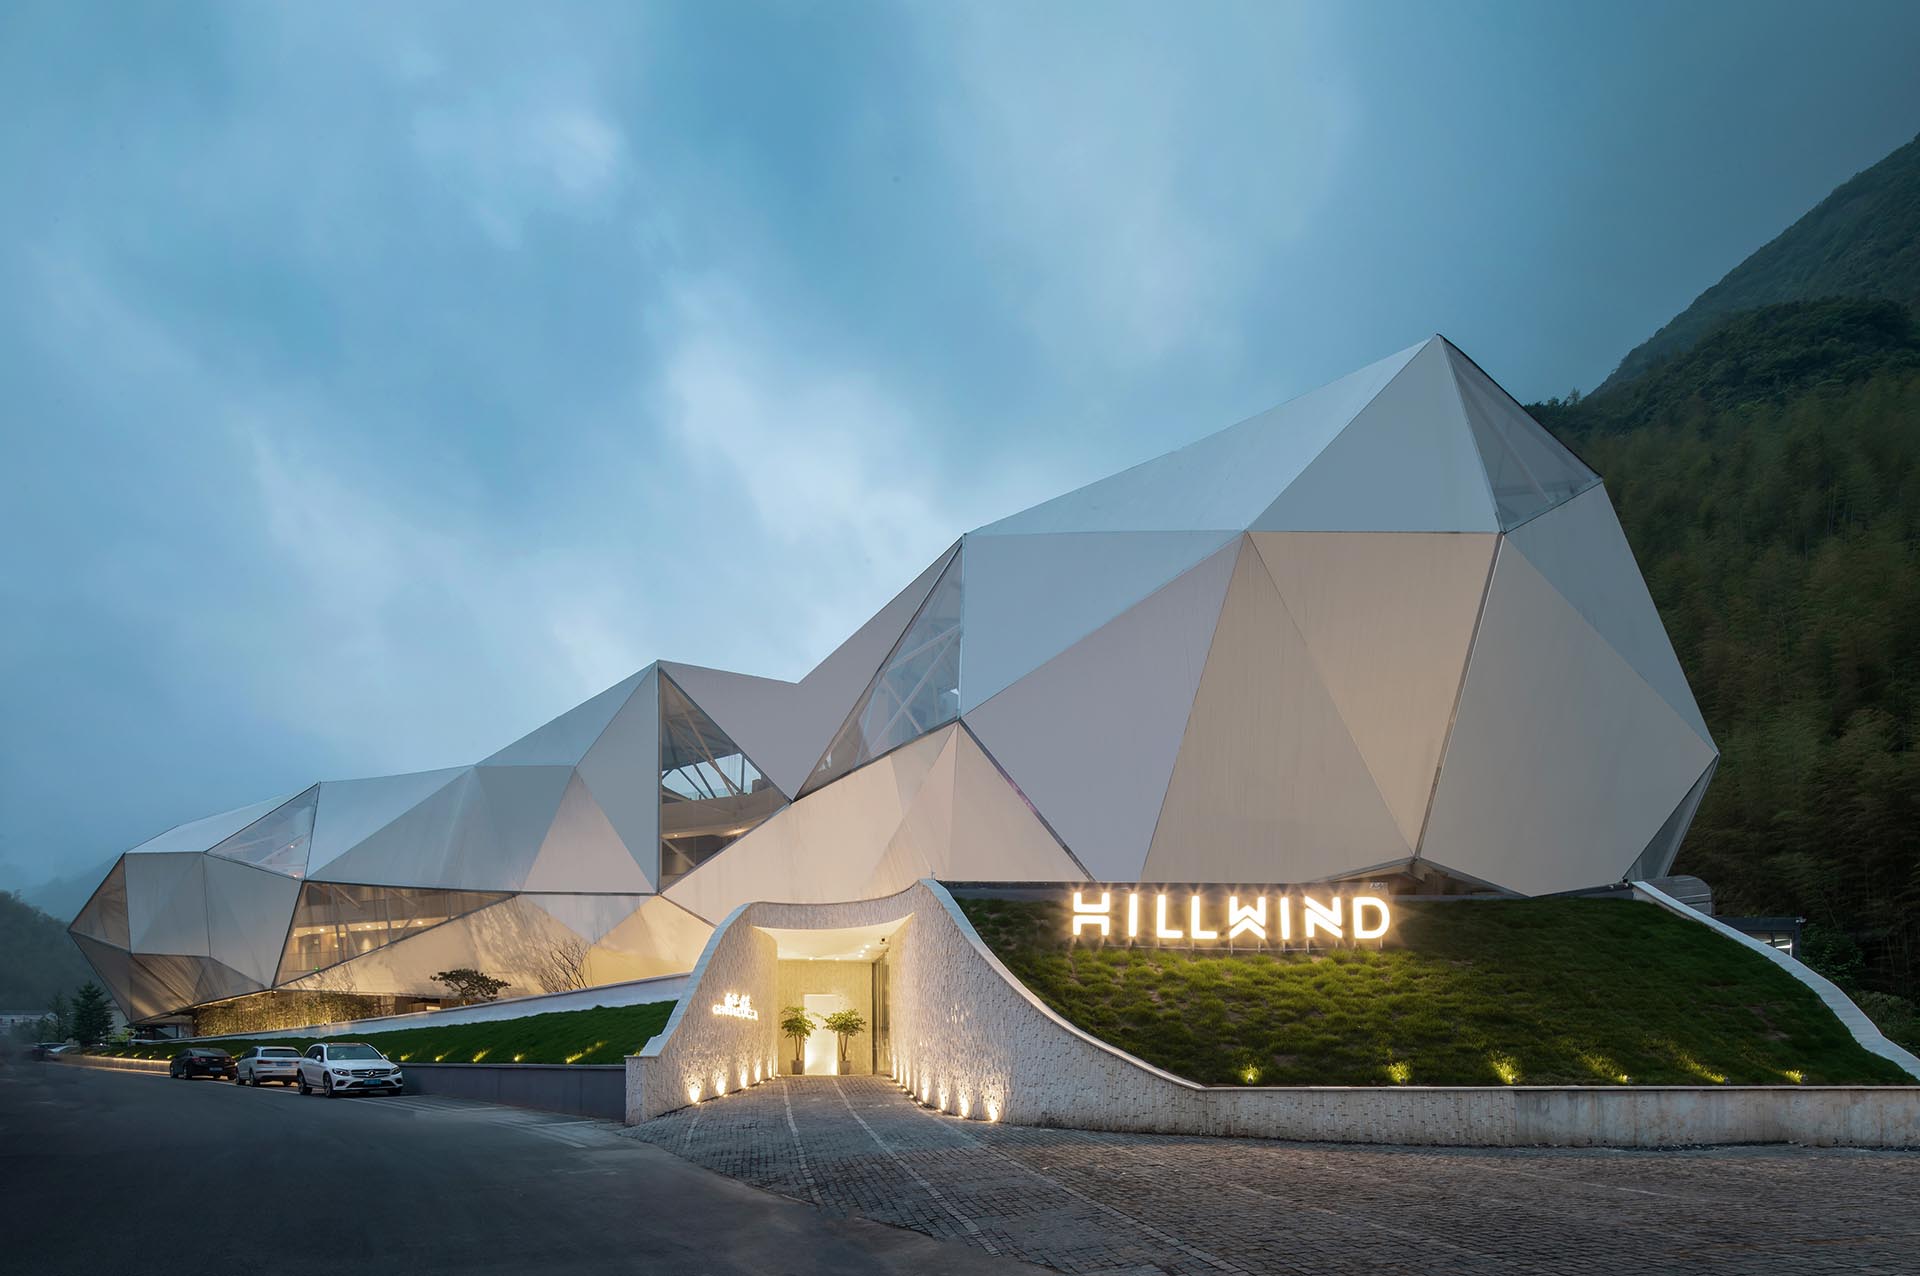 Отель и курорт Hill Wind, спроектированный Хуафанг Вангом